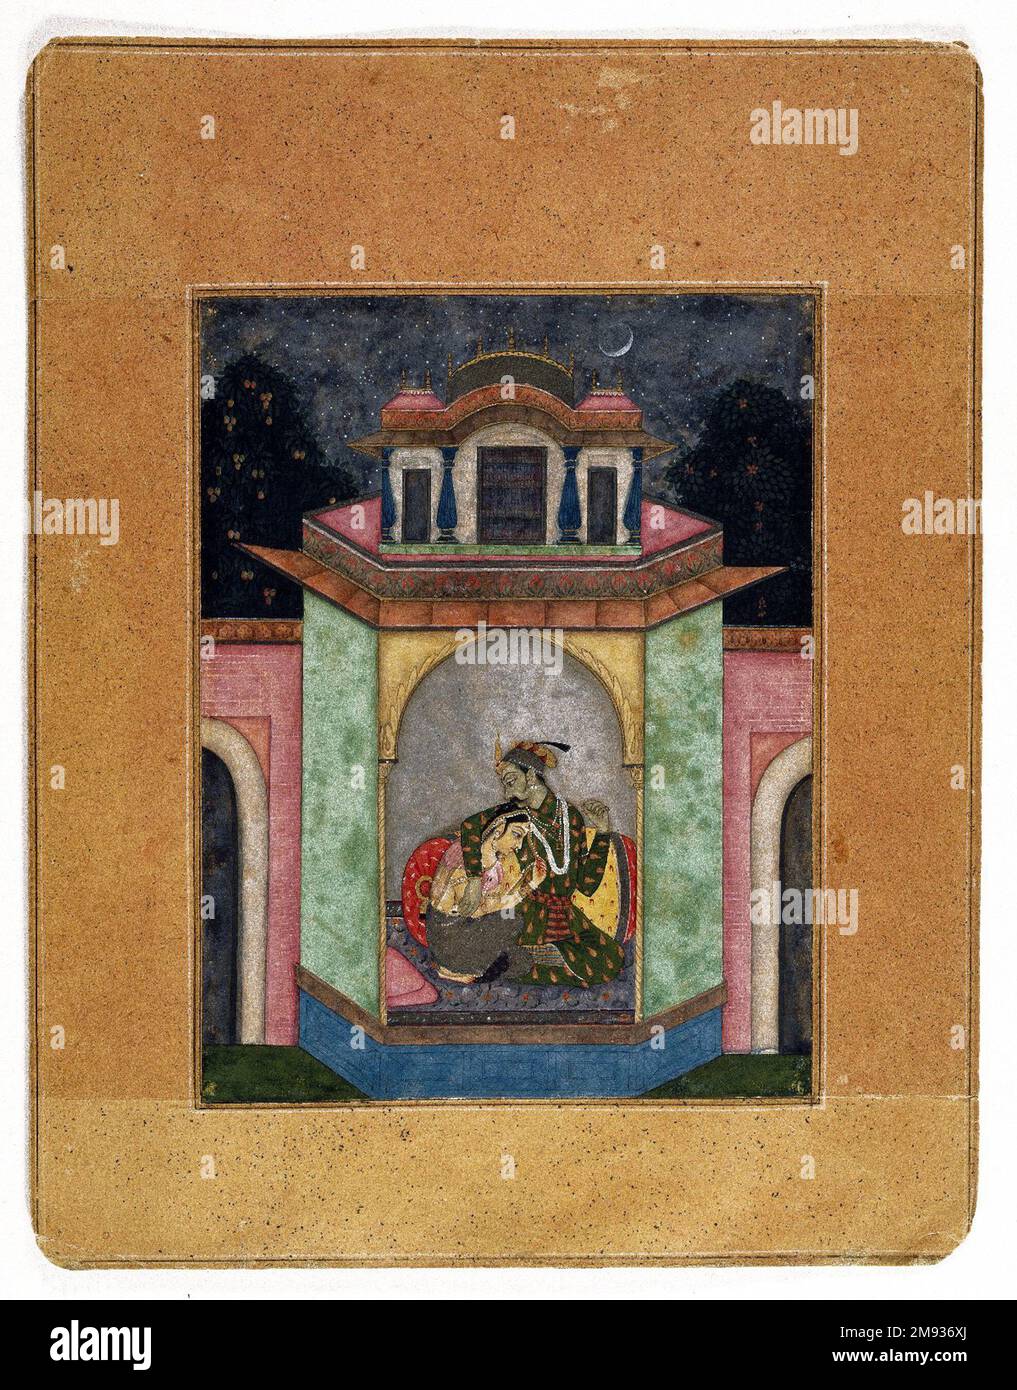 Dipaka Raga, Page aus einer Ragamala-Serie, die Mohammed (Sohn von nur) zugeschrieben wird. Dipaka Raga, Page aus einer Ragamala-Serie, Kalifornien. 1690-1700. Undurchsichtige Aquarelle, Gold und Silber auf Papier, Blatt: 9 7/8 x 7 5/8 Zoll (25,1 x 19,4 cm). Im 15. Oder 16. Jahrhundert entwickelte sich ein neues Malgenre, das versuchte, die Stimmungen berühmter Passagen klassischer Musik in Bildern festzuhalten. Die Musik, auch bekannt als Ragas oder Raginis, inspirierte Künstler dazu, kleine Szenarien zu kreieren – glücklich oder traurig, wild oder ruhig, die tagsüber oder nachts, im Sommer oder Winter stattfinden, und immer wieder über Agai illustriert wurden Stockfoto